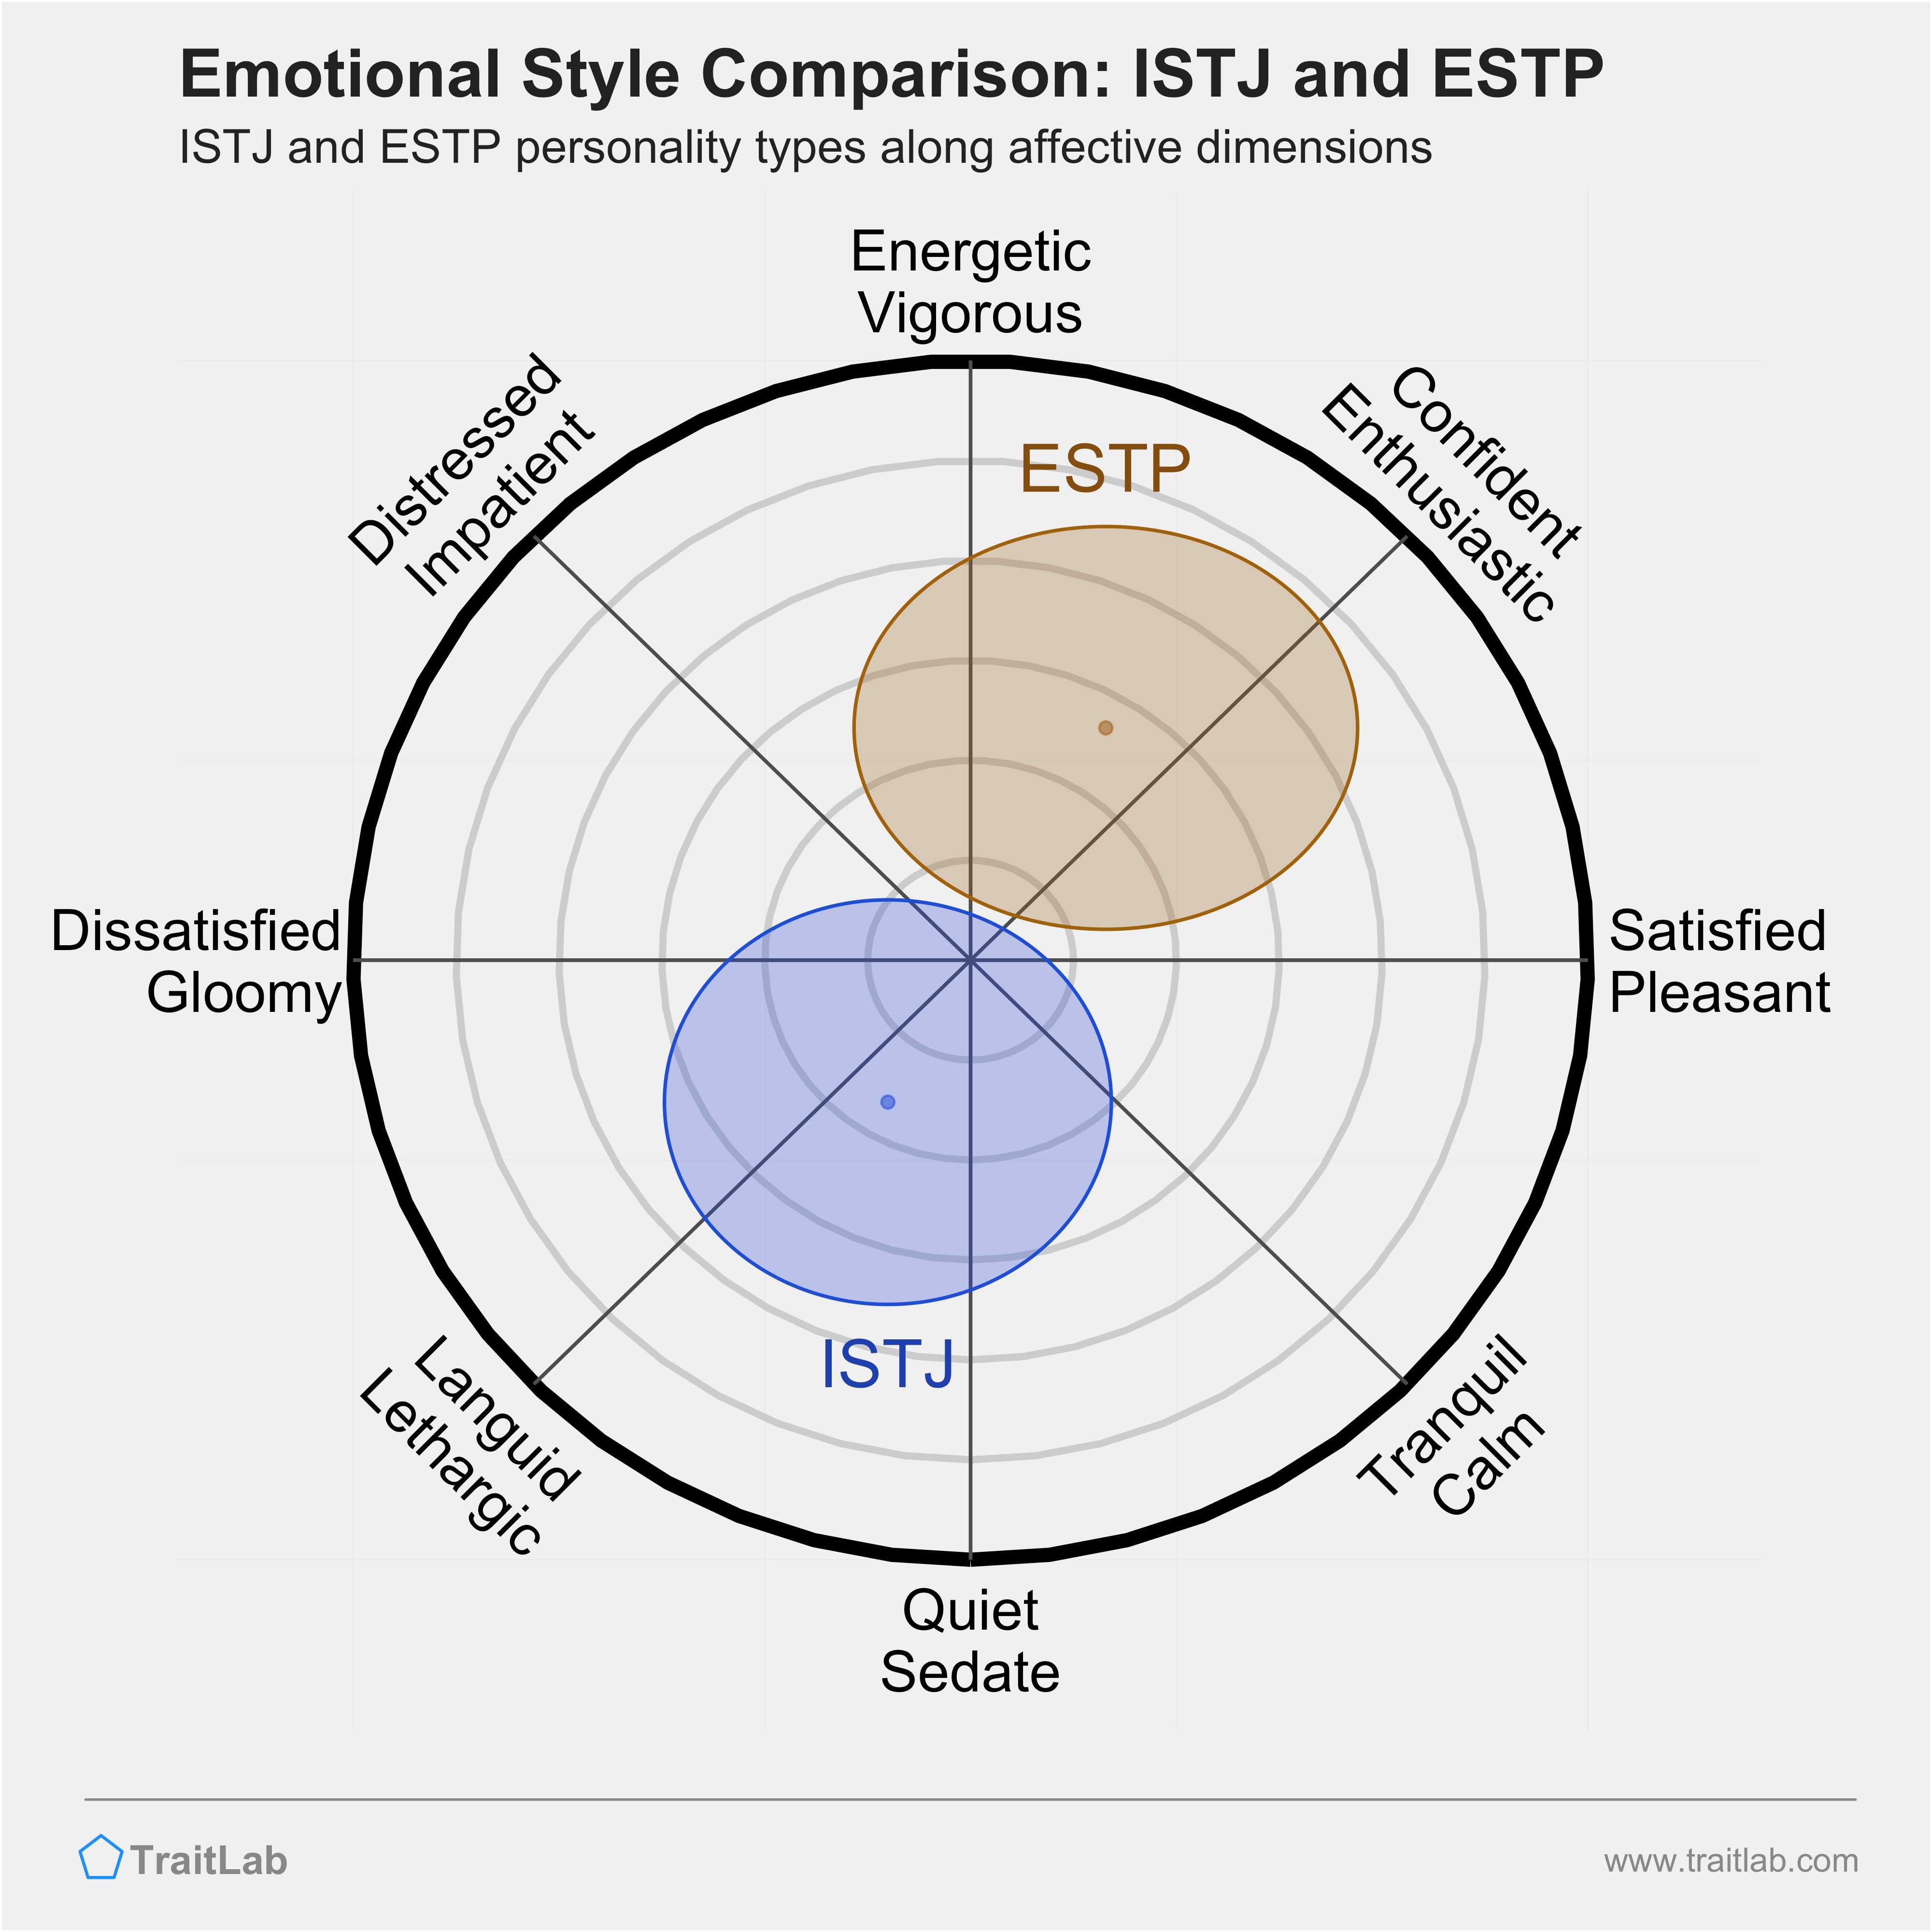 ISTJ and ESTP comparison across emotional (affective) dimensions